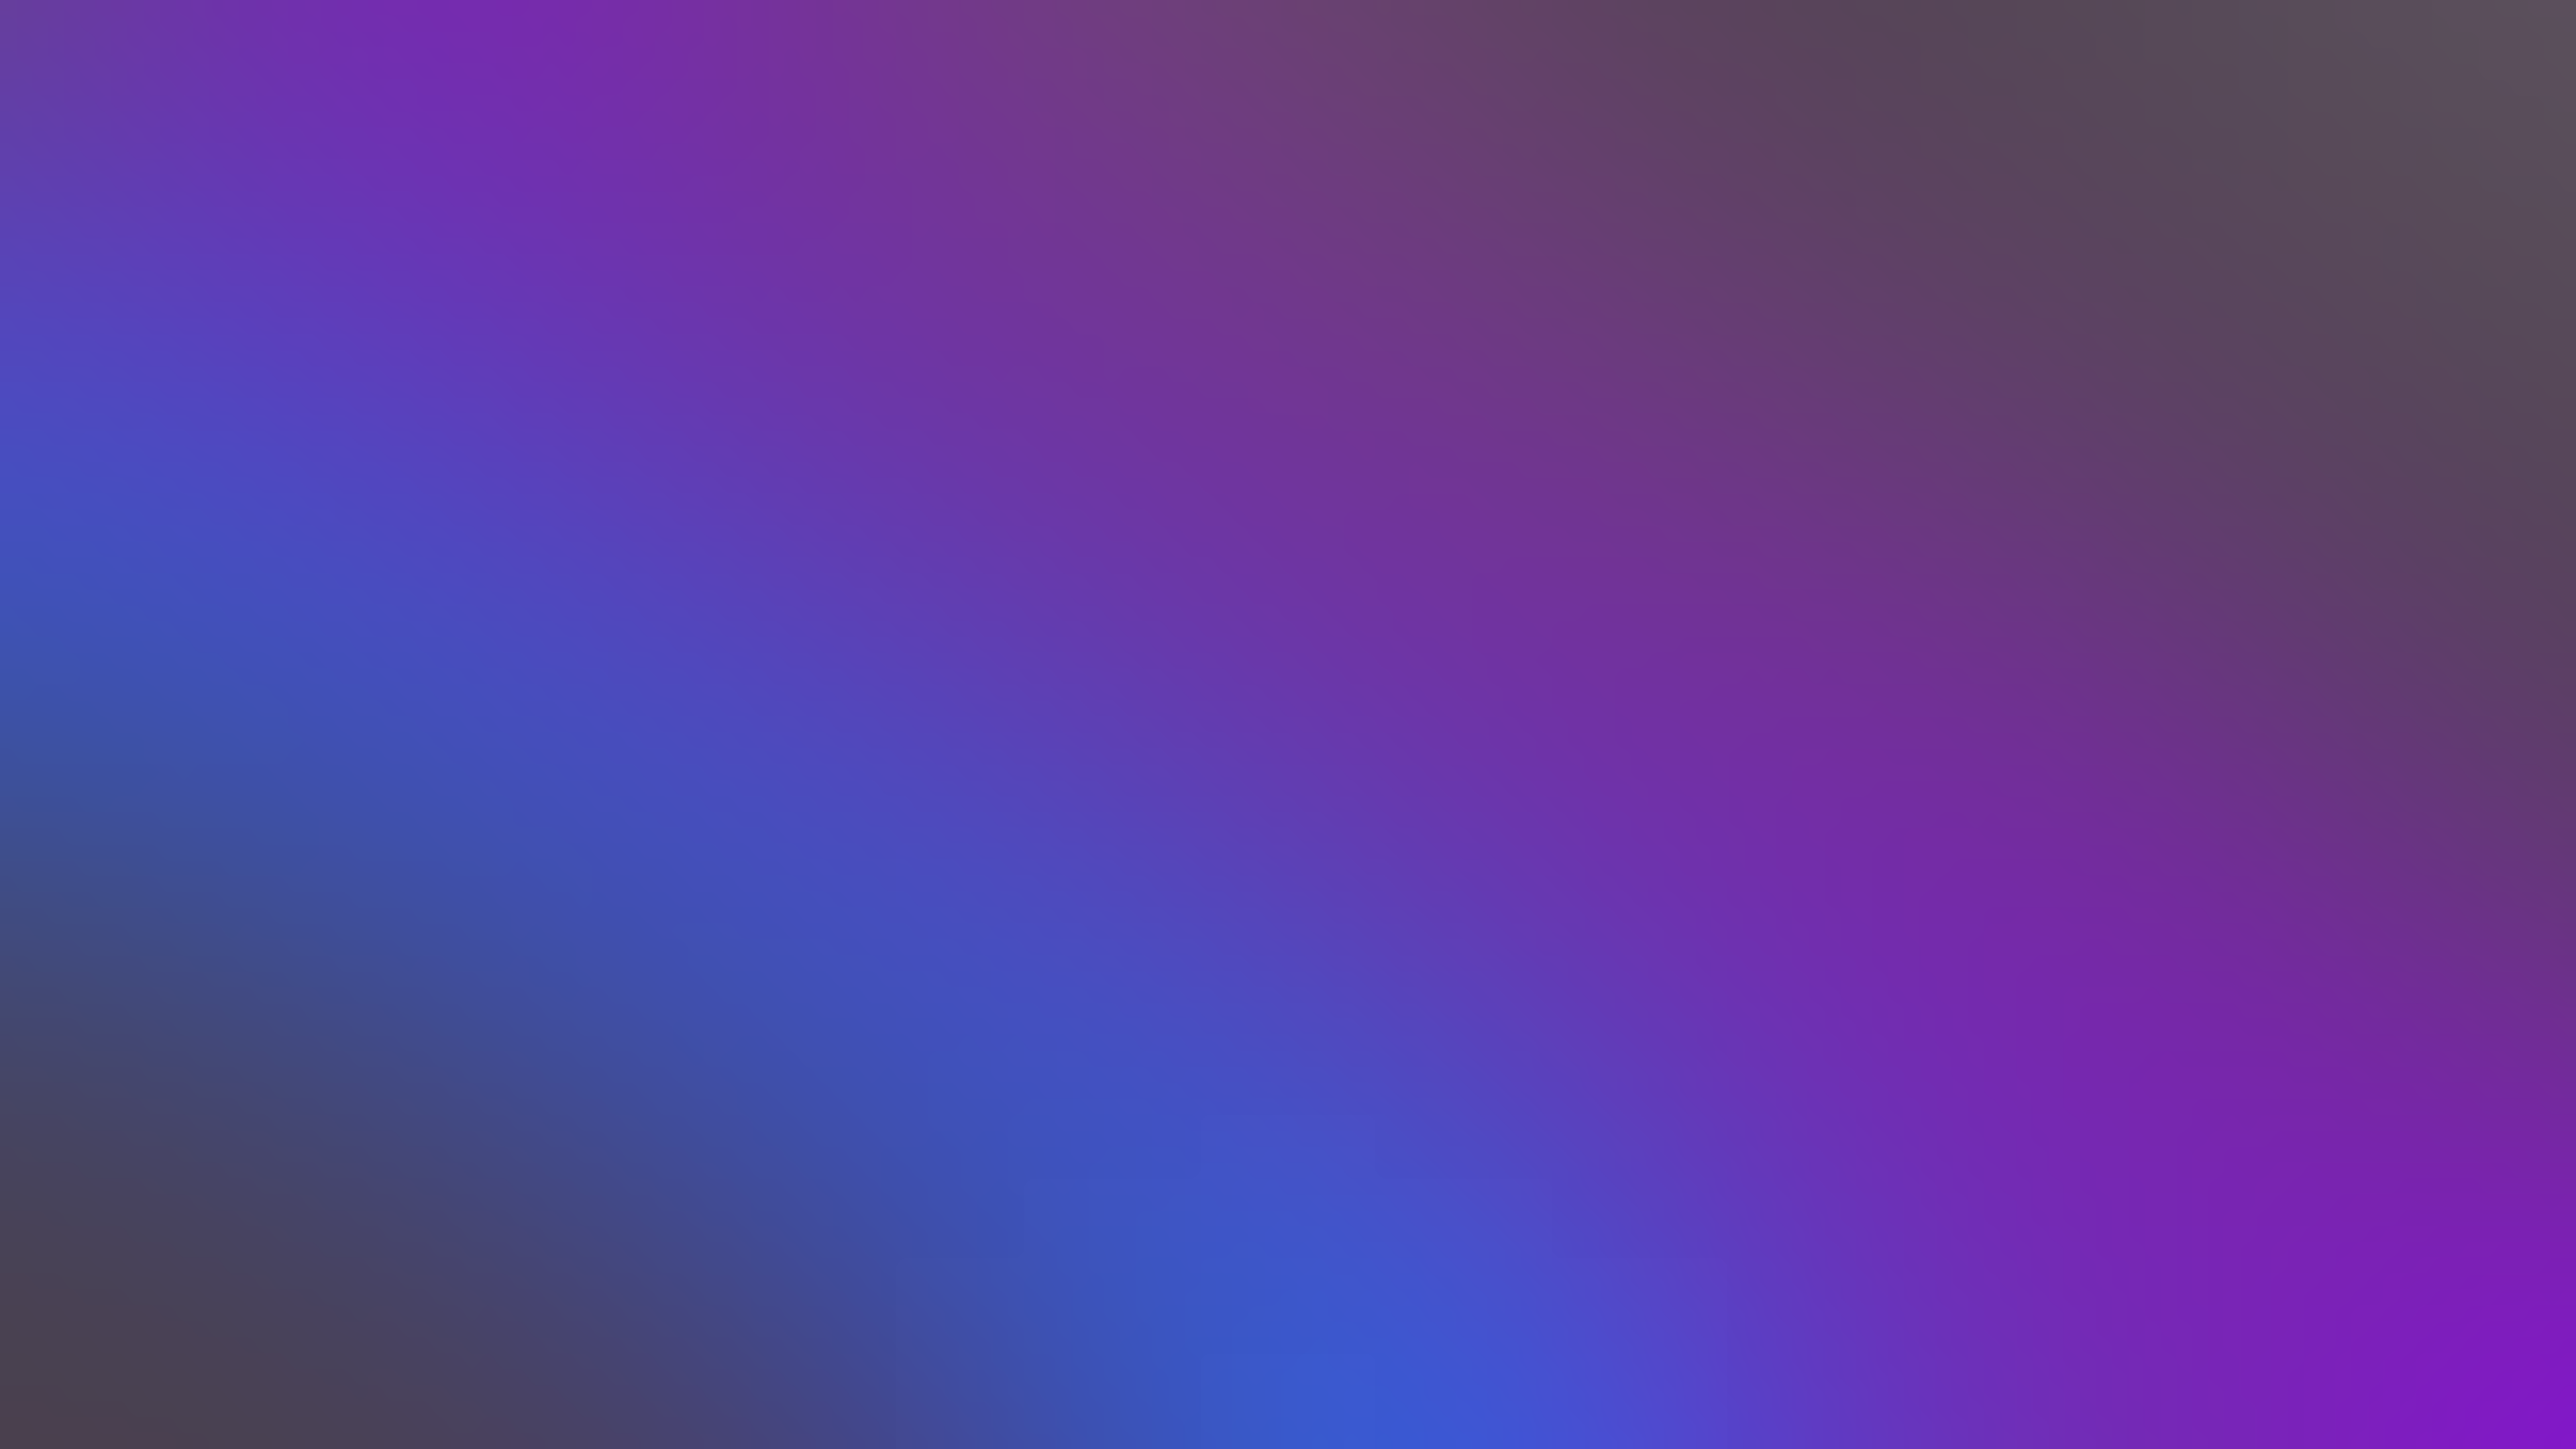 Gradient Soft Gradient Blurred Blurry Background Texture Minimalism 3840x2160